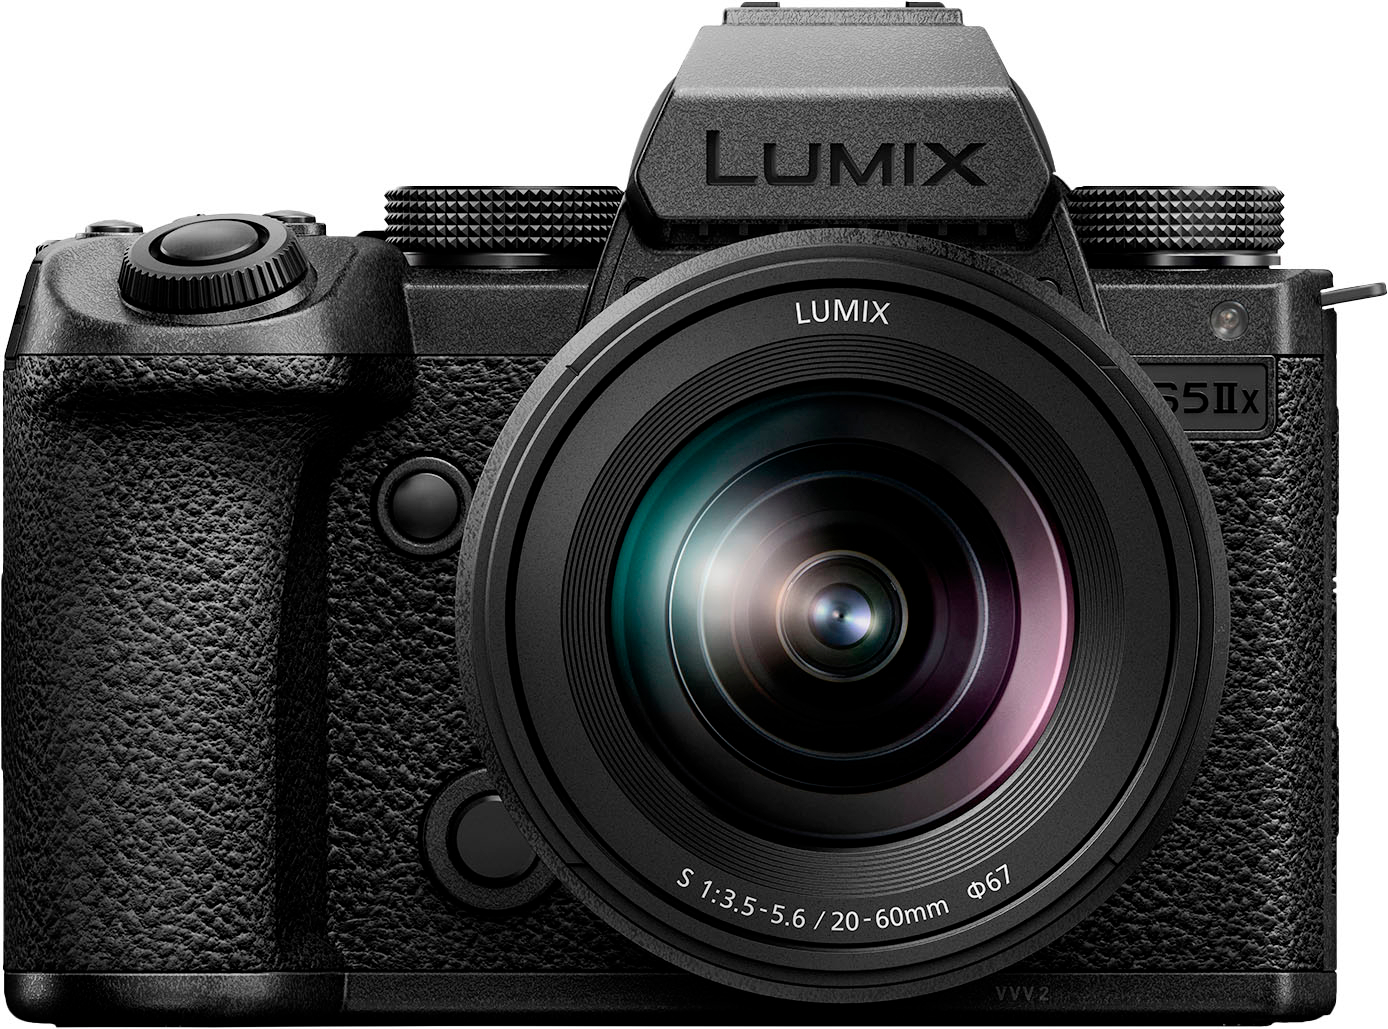 Злой близнец камеры Panasonic Lumix S5 II с буквой X